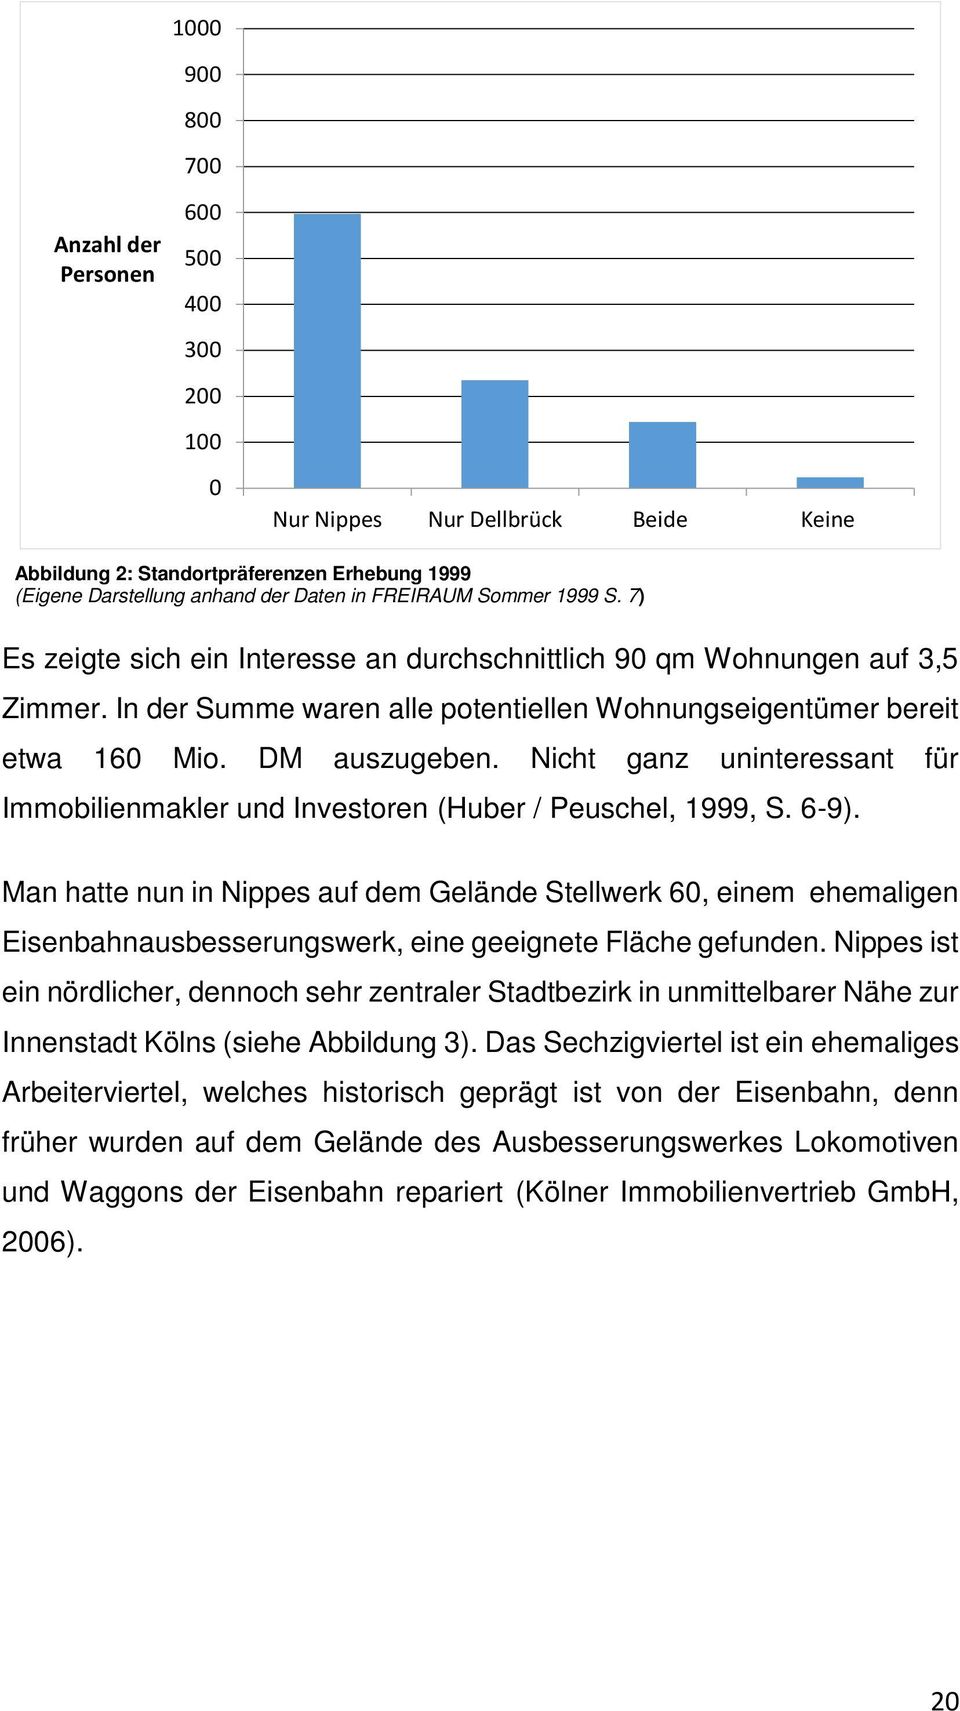 Nicht ganz uninteressant für Immobilienmakler und Investoren (Huber / Peuschel, 1999, S. 6-9).